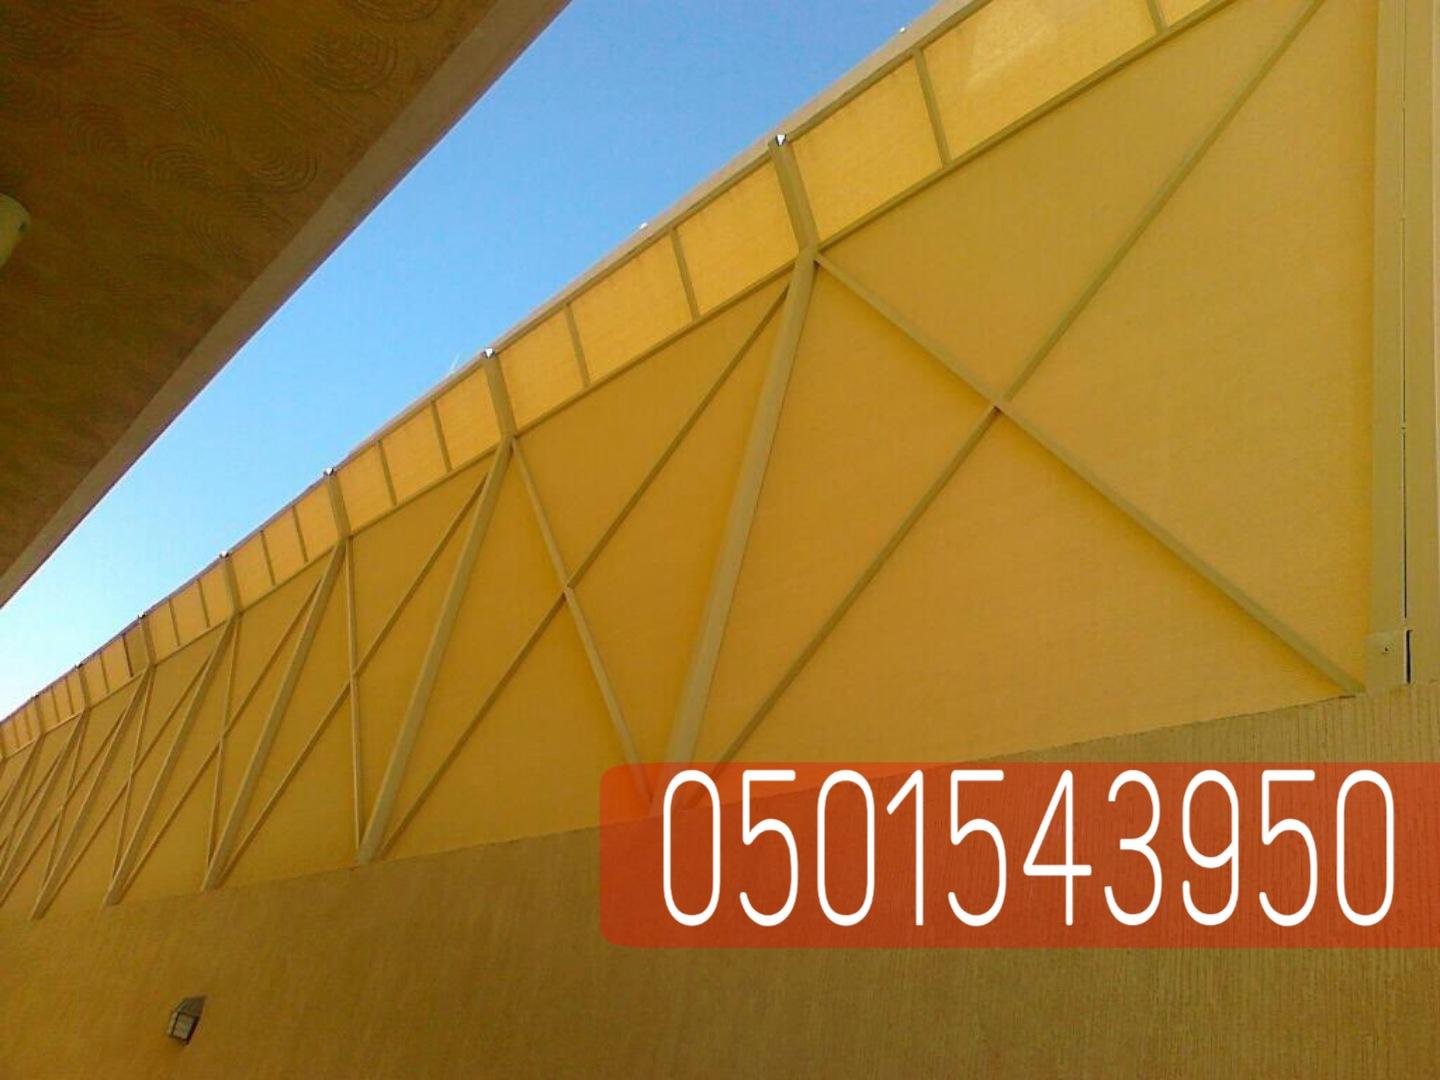 تركيب سواتر جداريه في الرياض جده,0501543950 794515675